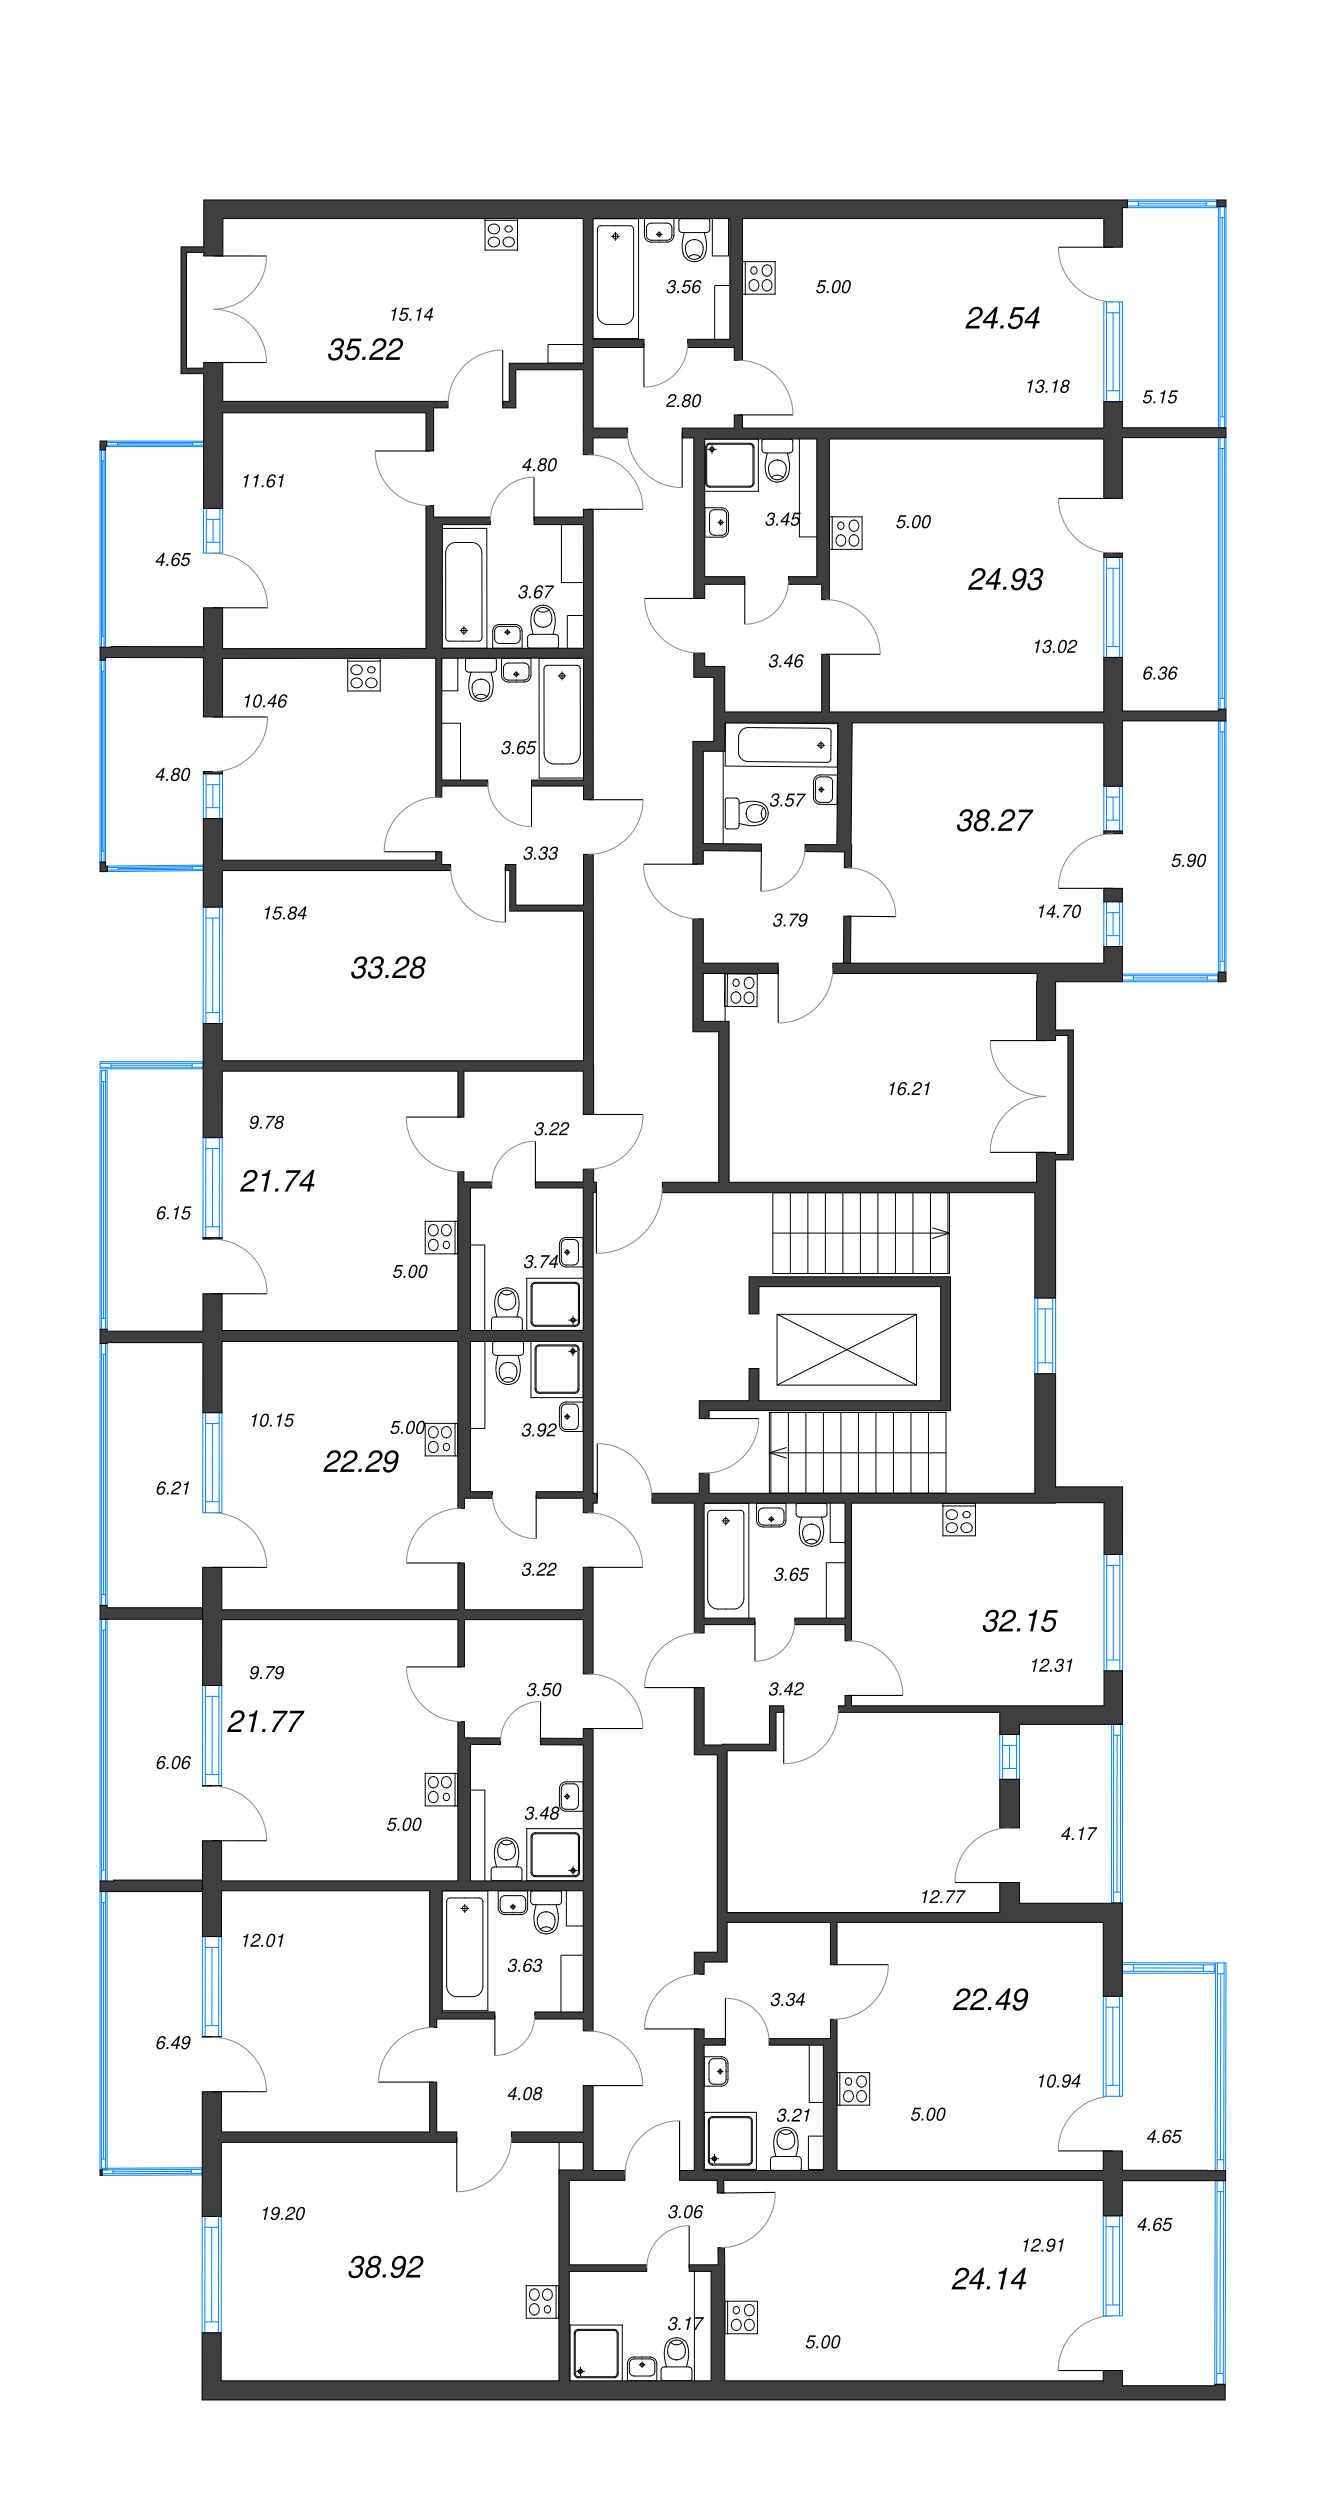 1-комнатная квартира, 33.28 м² - планировка этажа